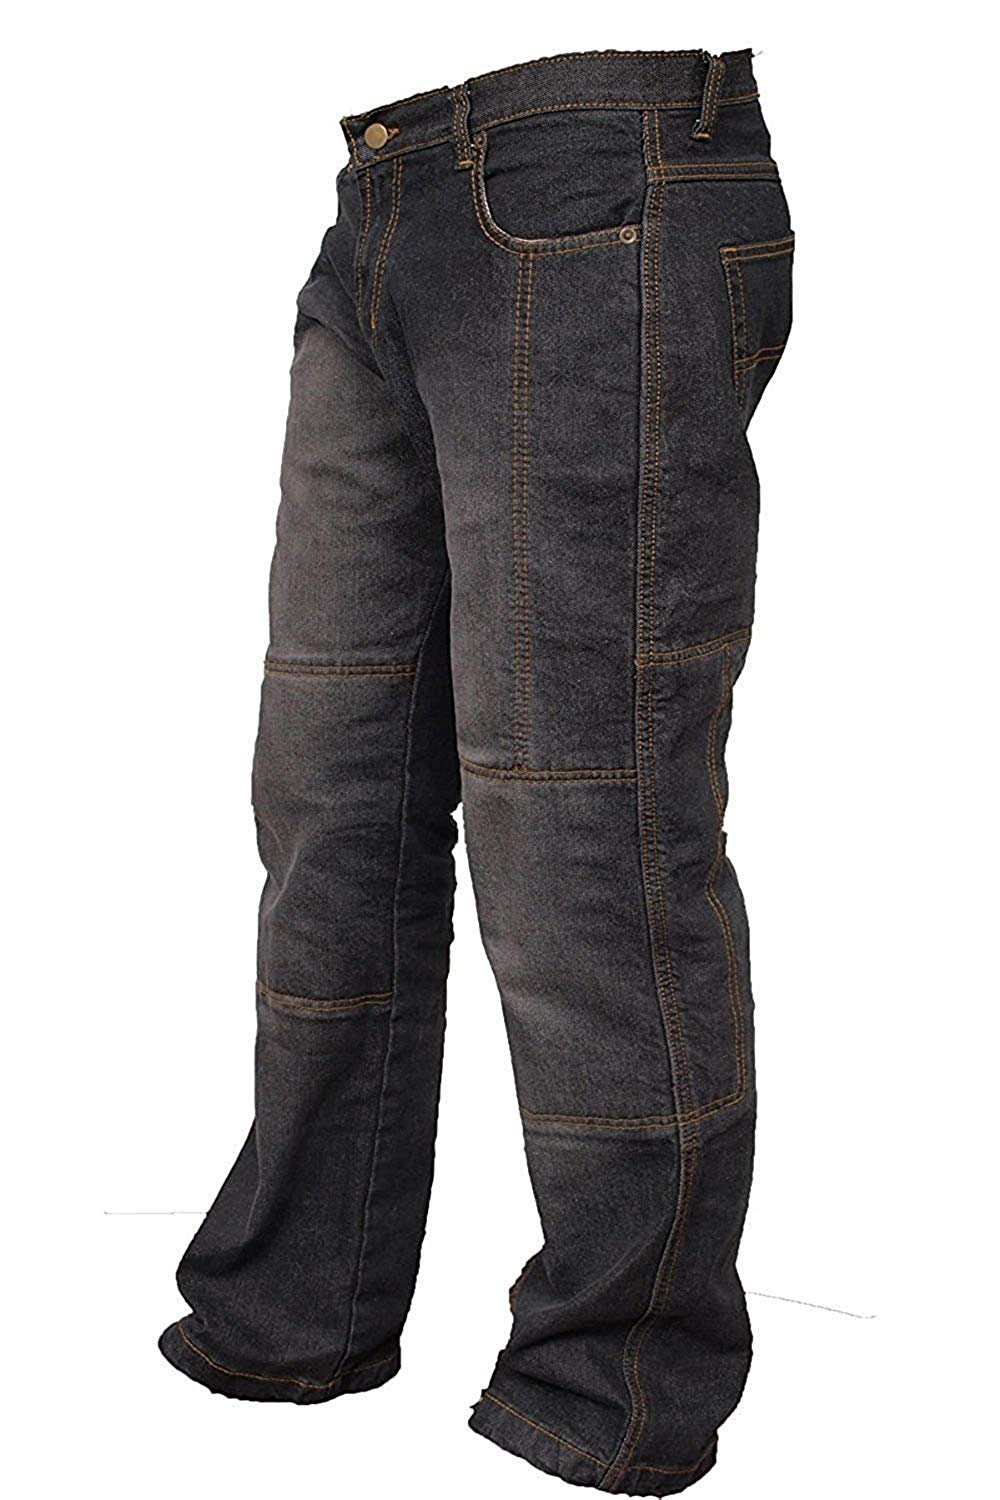 Pantalones Newfacelook para rodar, con proteccion 34-32 - OutletHarley